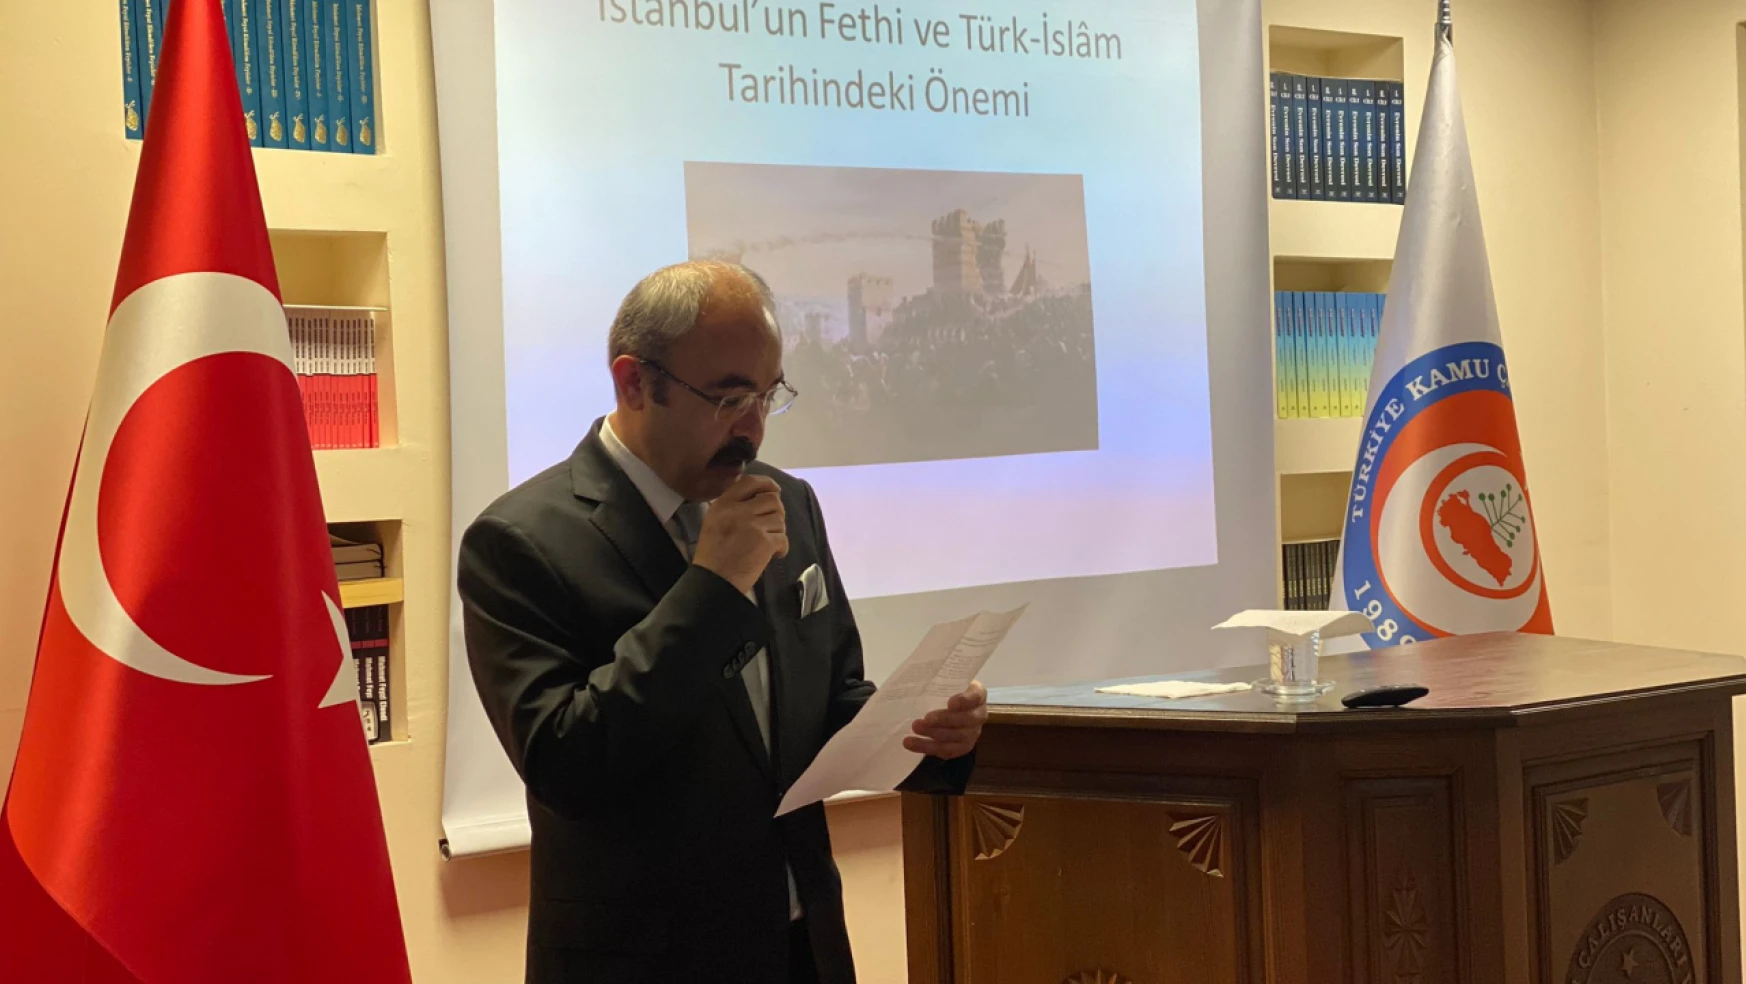 TÜRKAV'dan İstanbul'un Fethi söyleşisi